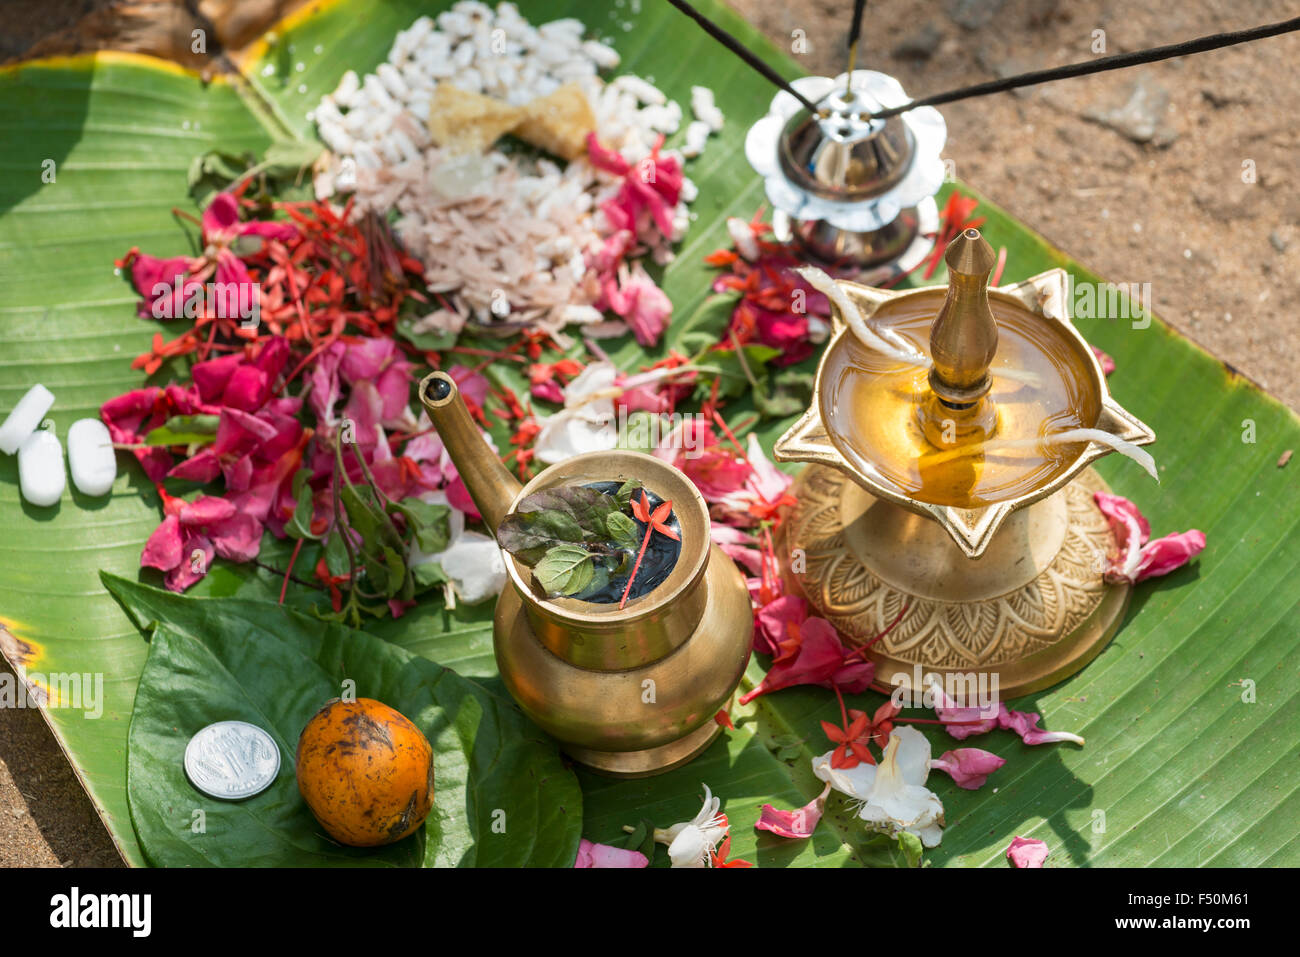 Einen kleinen Altar mit Blumen und öl Lampe auf einem Bananenblatt ist in einer belebten Straße während der pongala Festival Stockfoto